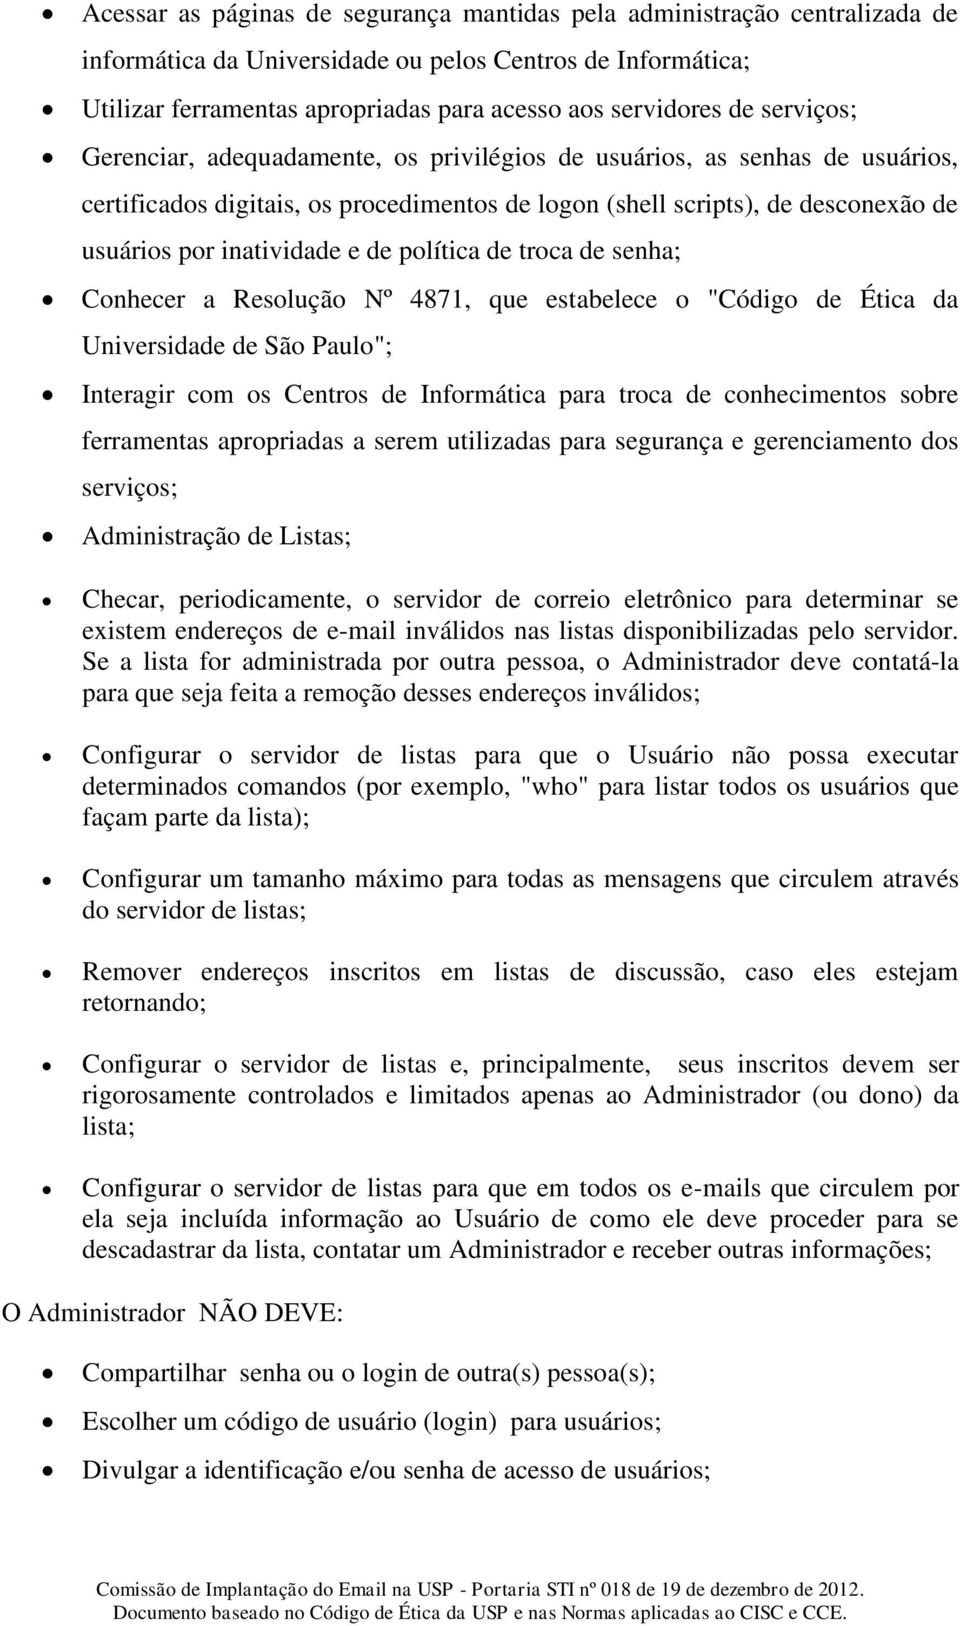 política de troca de senha; Conhecer a Resolução Nº 4871, que estabelece o "Código de Ética da Universidade de São Paulo"; Interagir com os Centros de Informática para troca de conhecimentos sobre